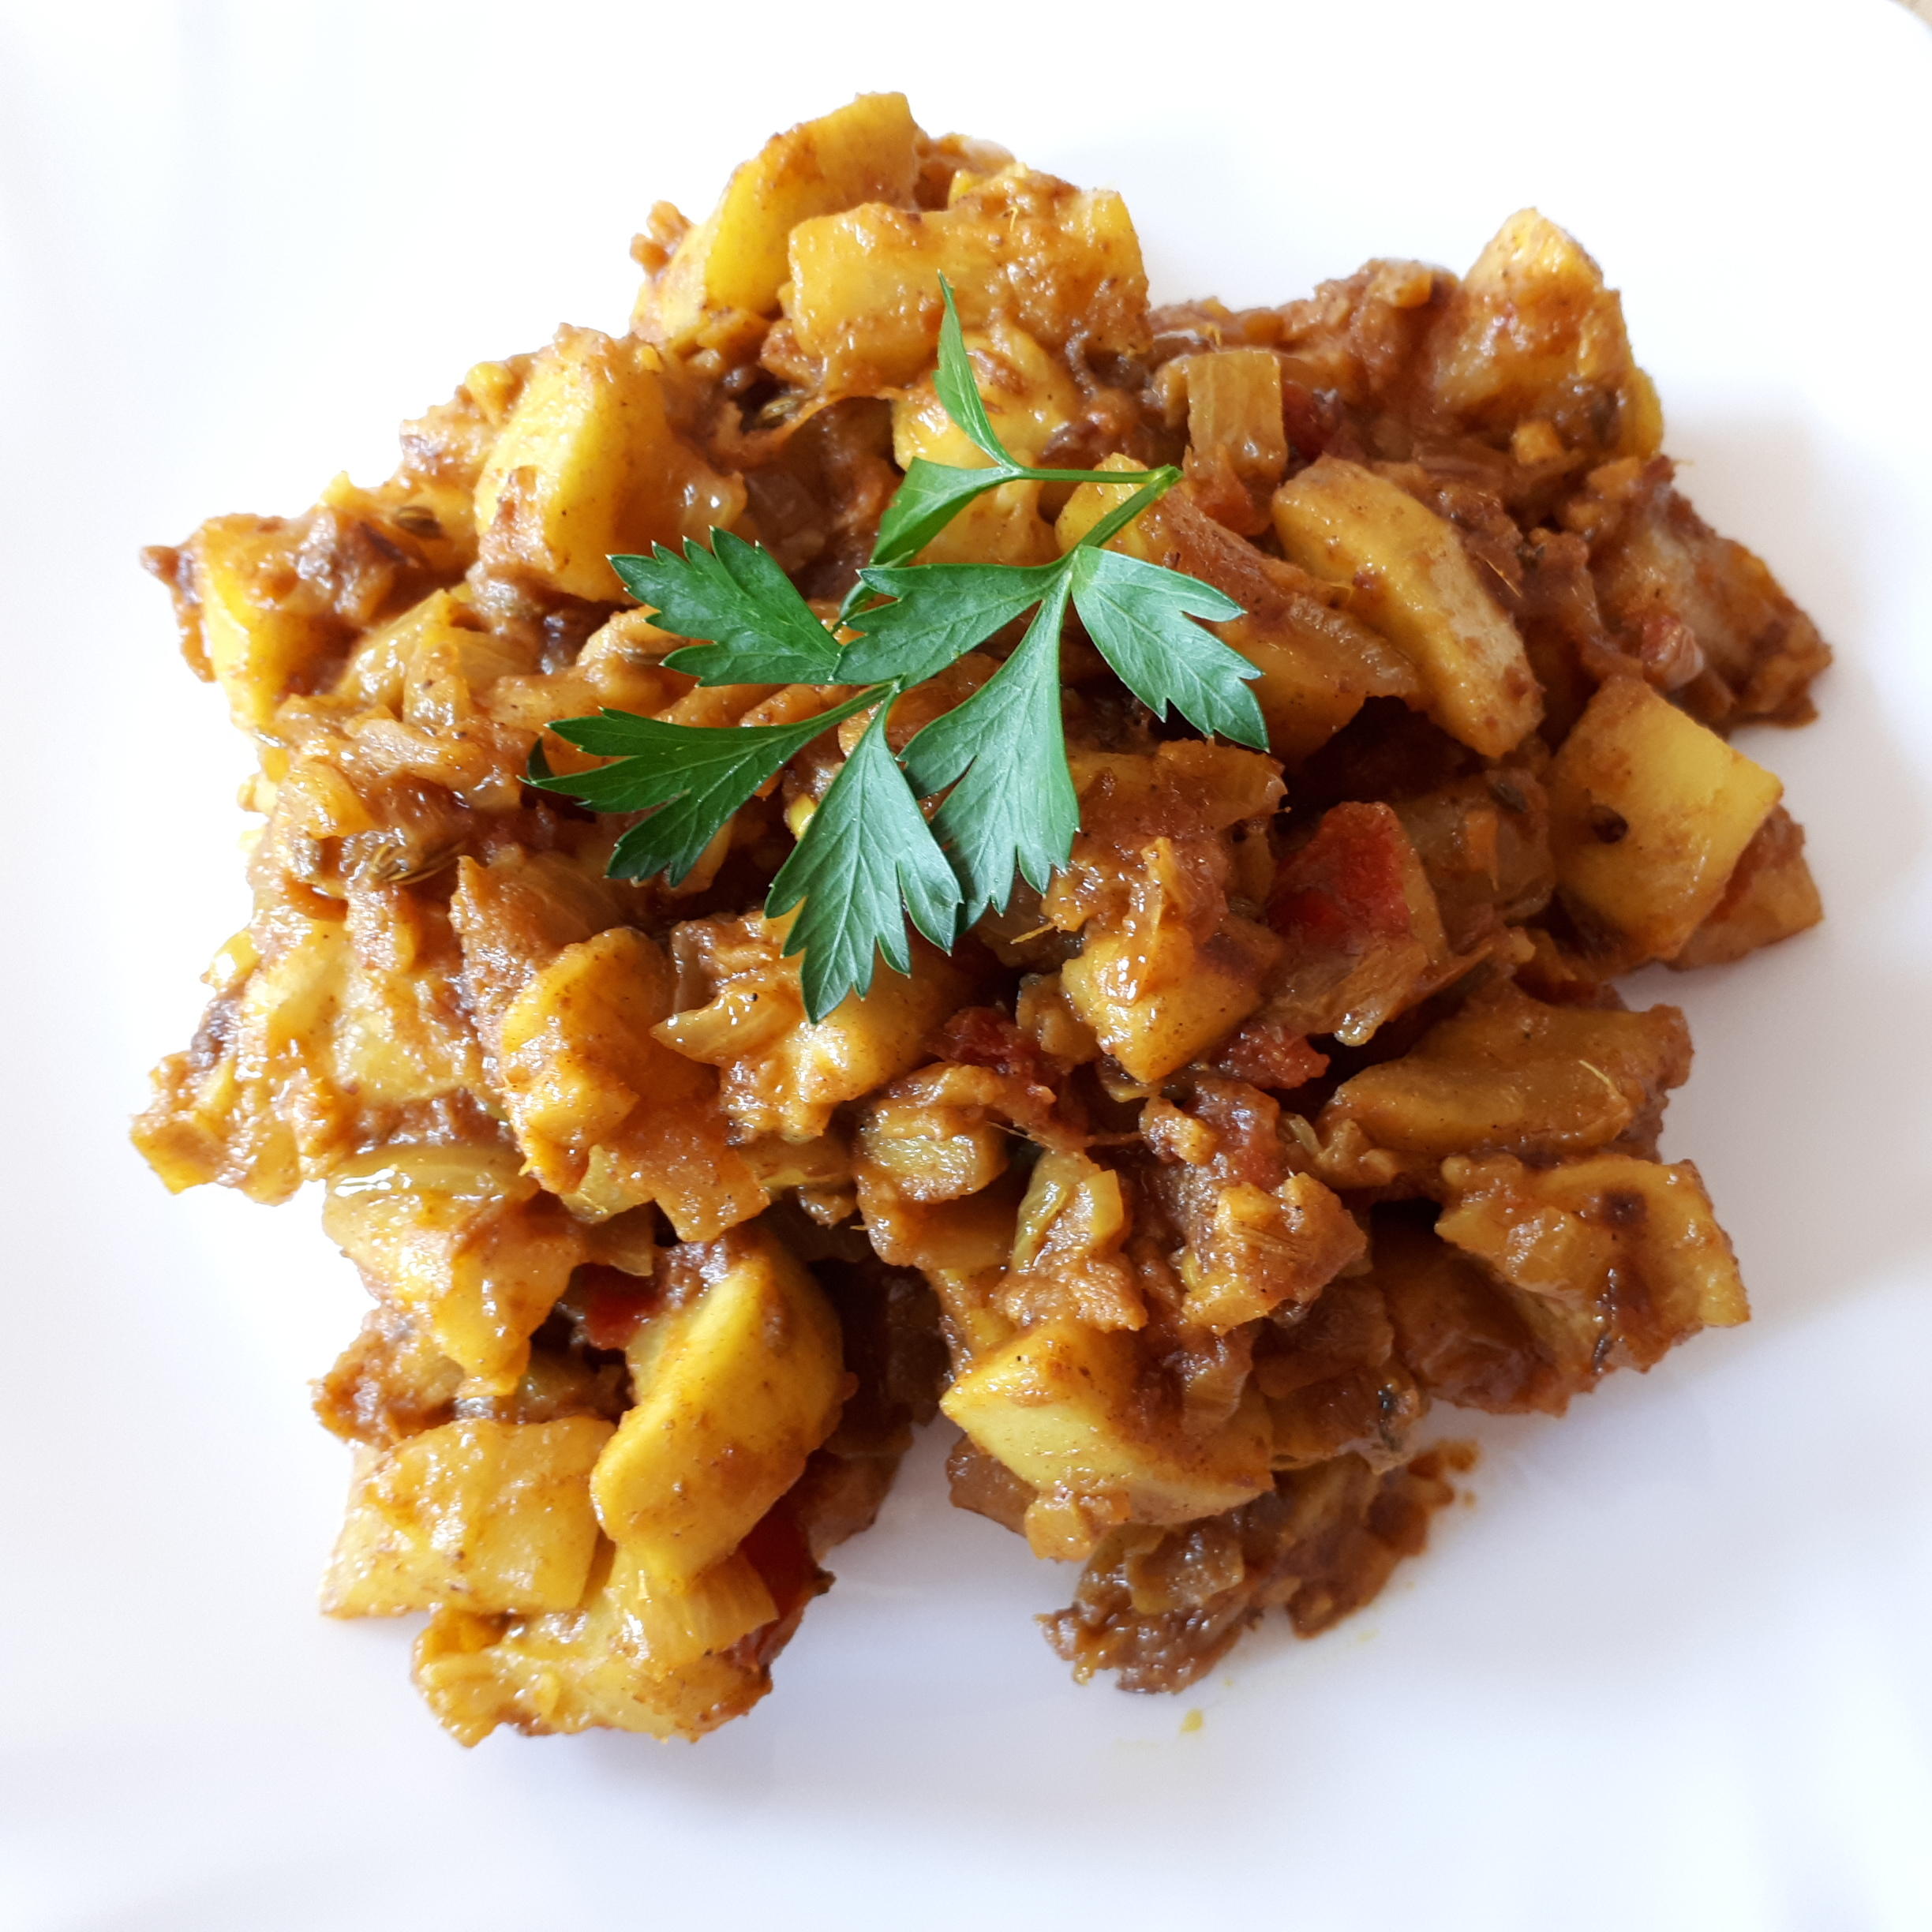 Bilder für indisch: Spicy Kaddu Curry - Würziges Kürbis Curry - Rezept